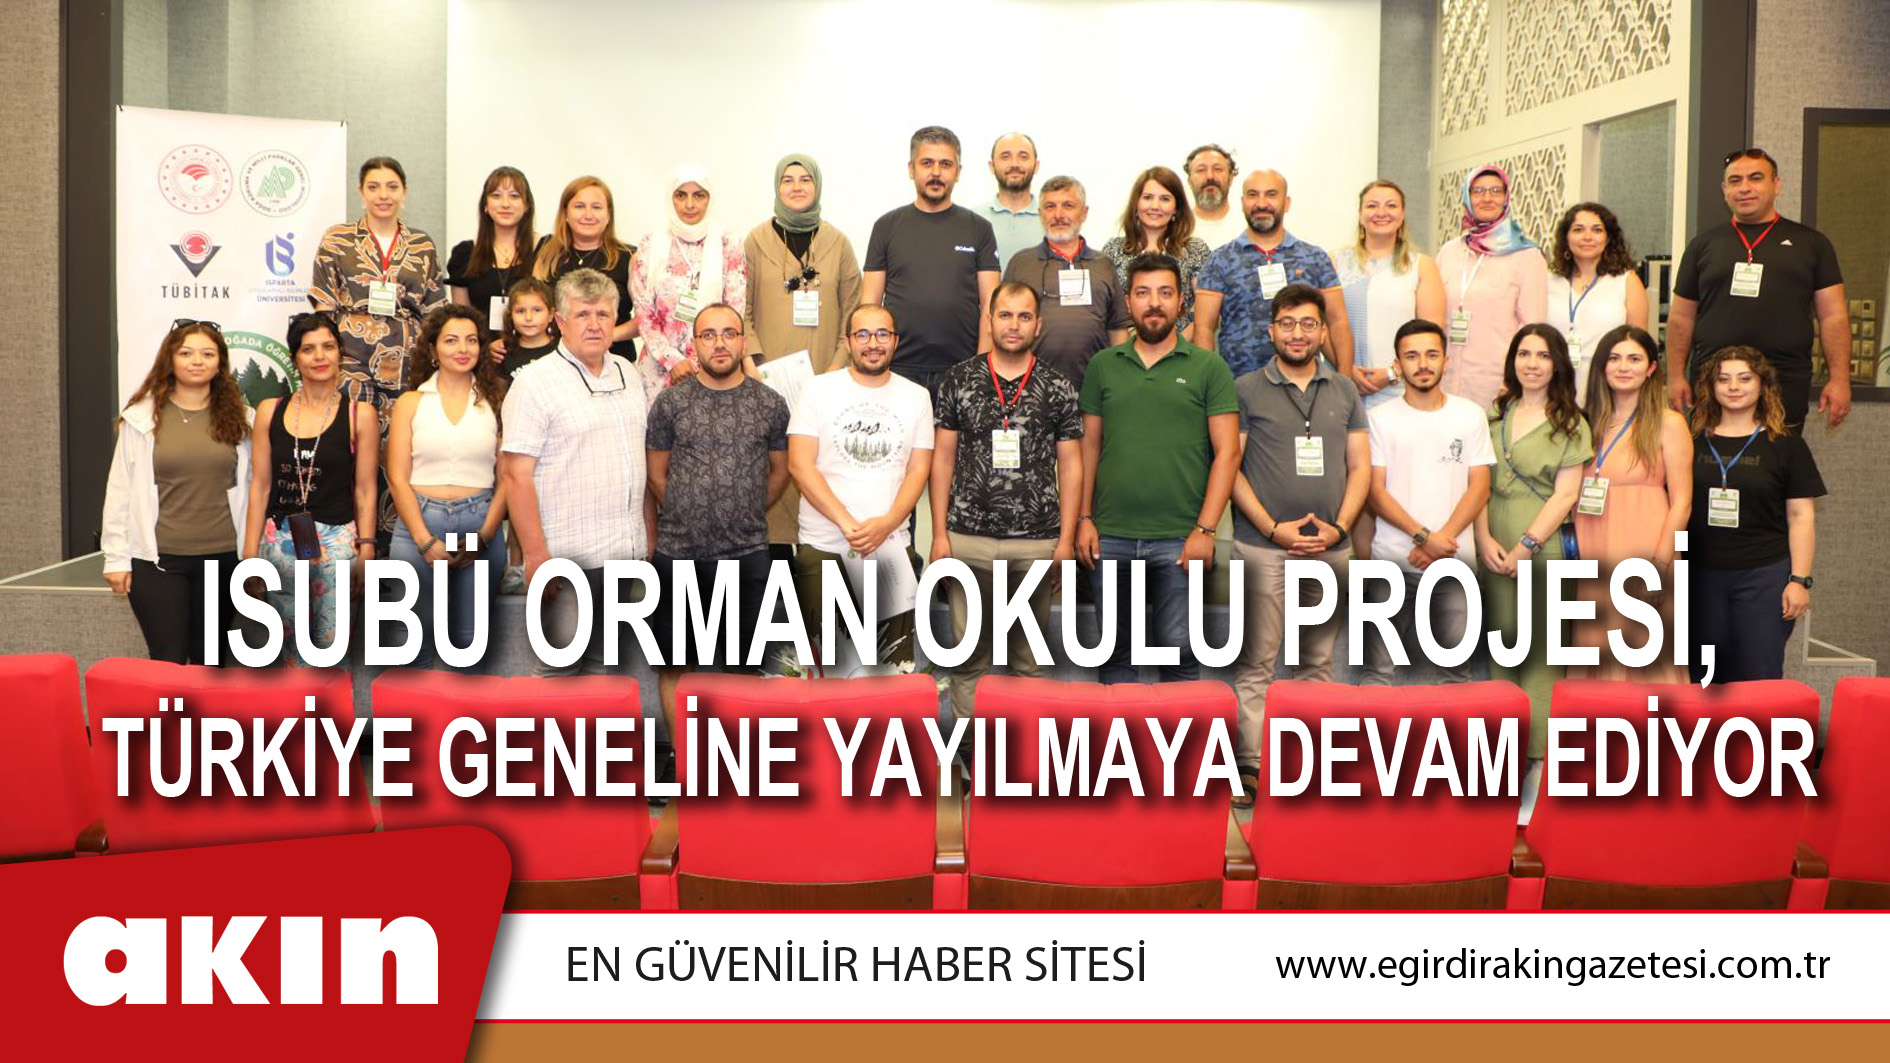 ISUBÜ Orman Okulu Projesi, Türkiye Geneline Yayılmaya Devam Ediyor